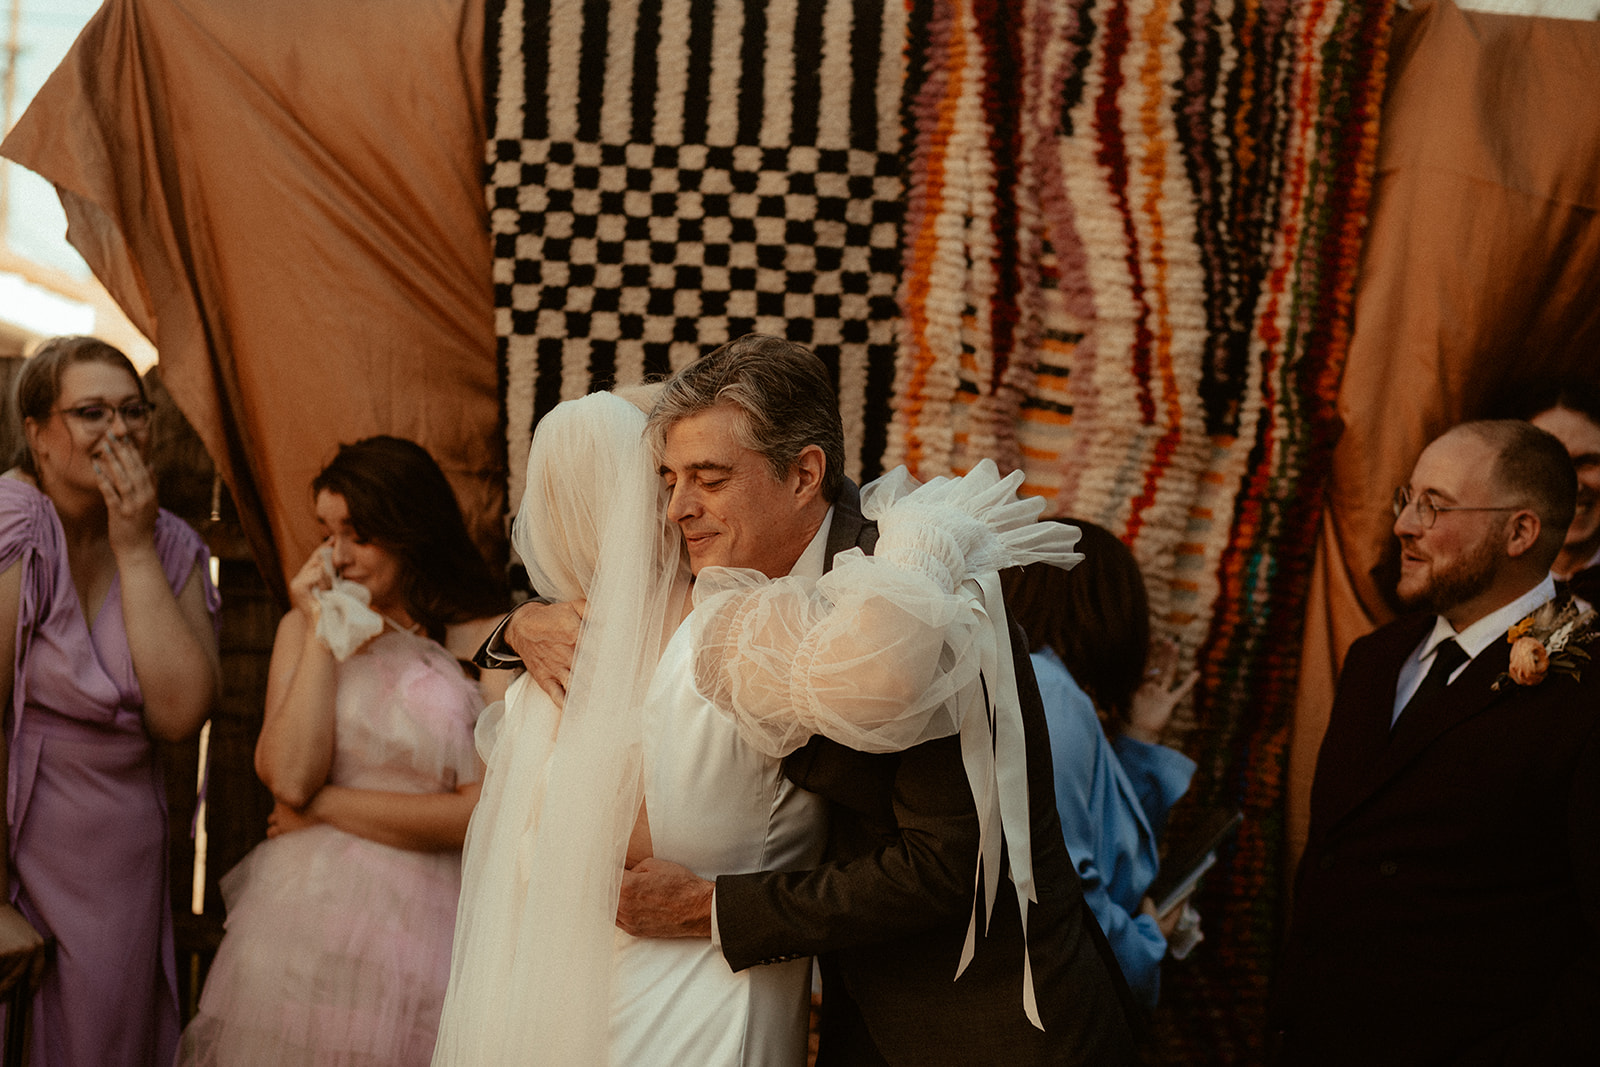 dad hugging bride during wedding ceremony